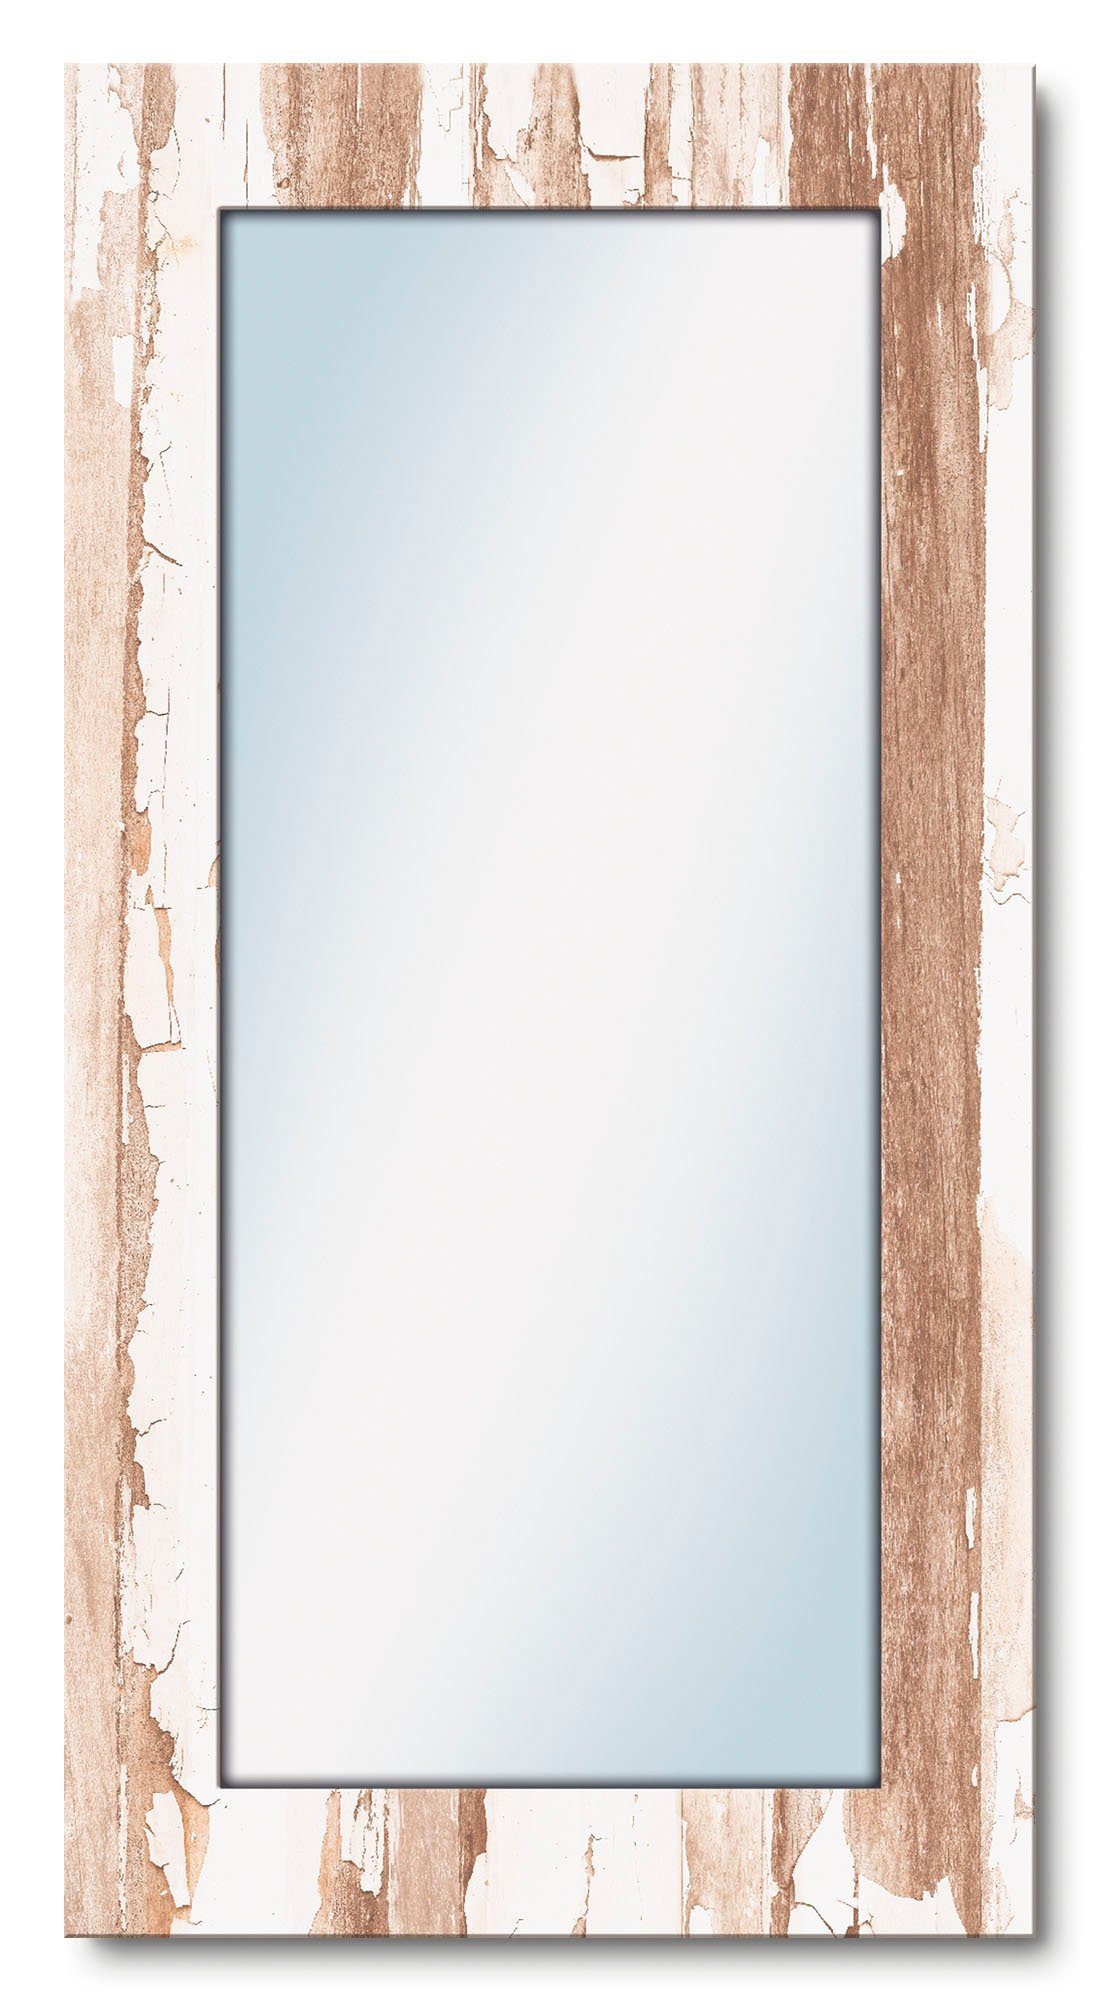 Artland Wandspiegel Home ingelijste spiegel voor het hele lichaam met motiefrand, geschikt voor kleine, smalle hal, halspiegel, mirror spiegel omrand op te hangen? Bestel nu | OTTO